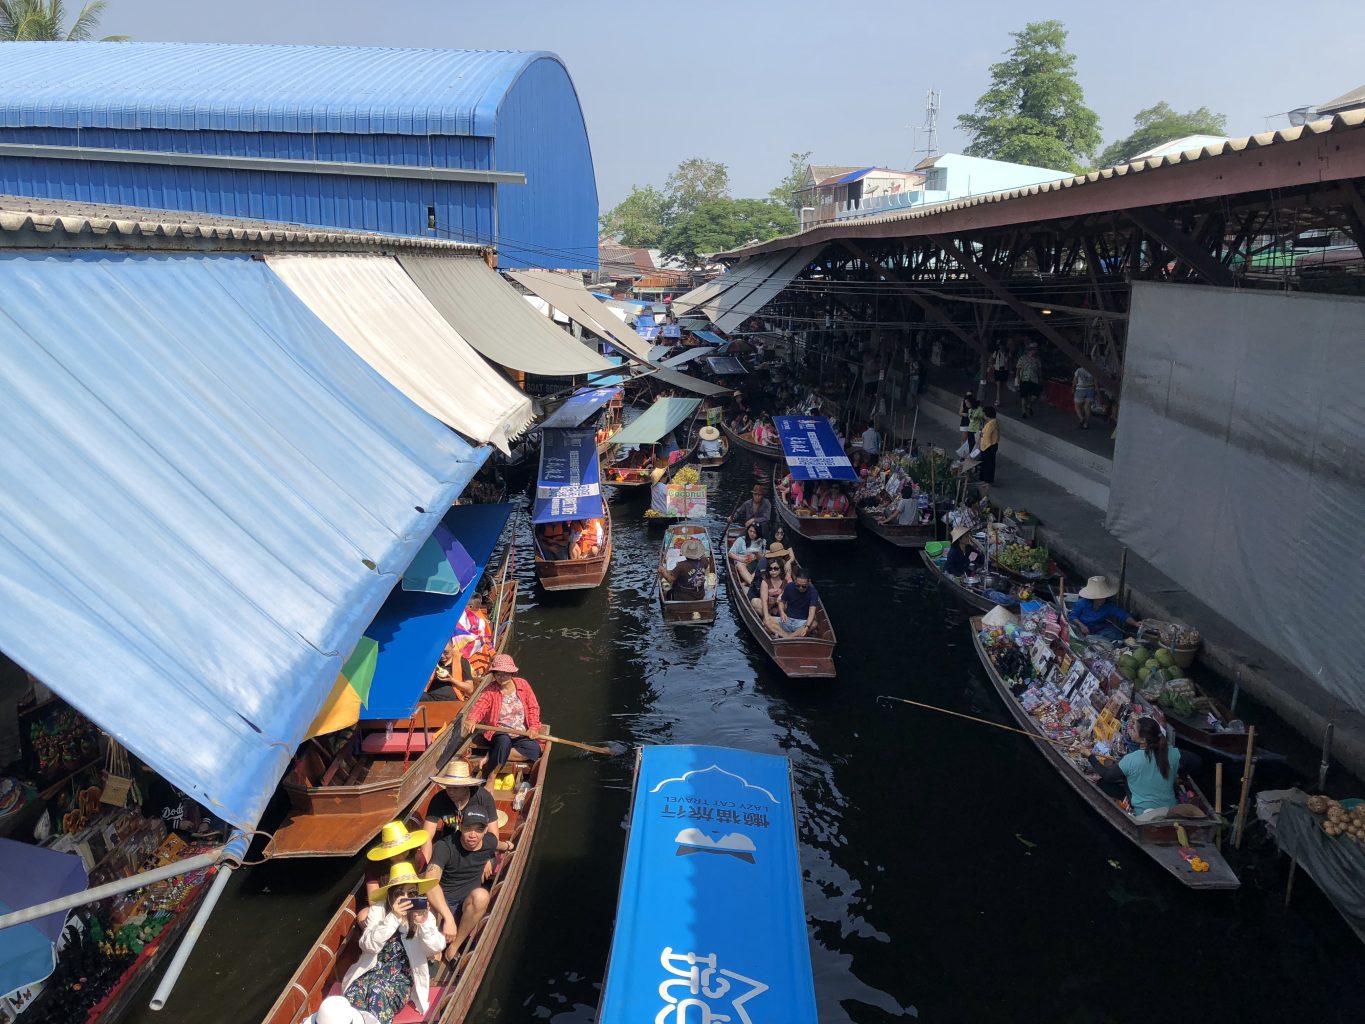 Mercado flotante. mercado del tren, el mercado flotante y ruinas de Ayutthaya